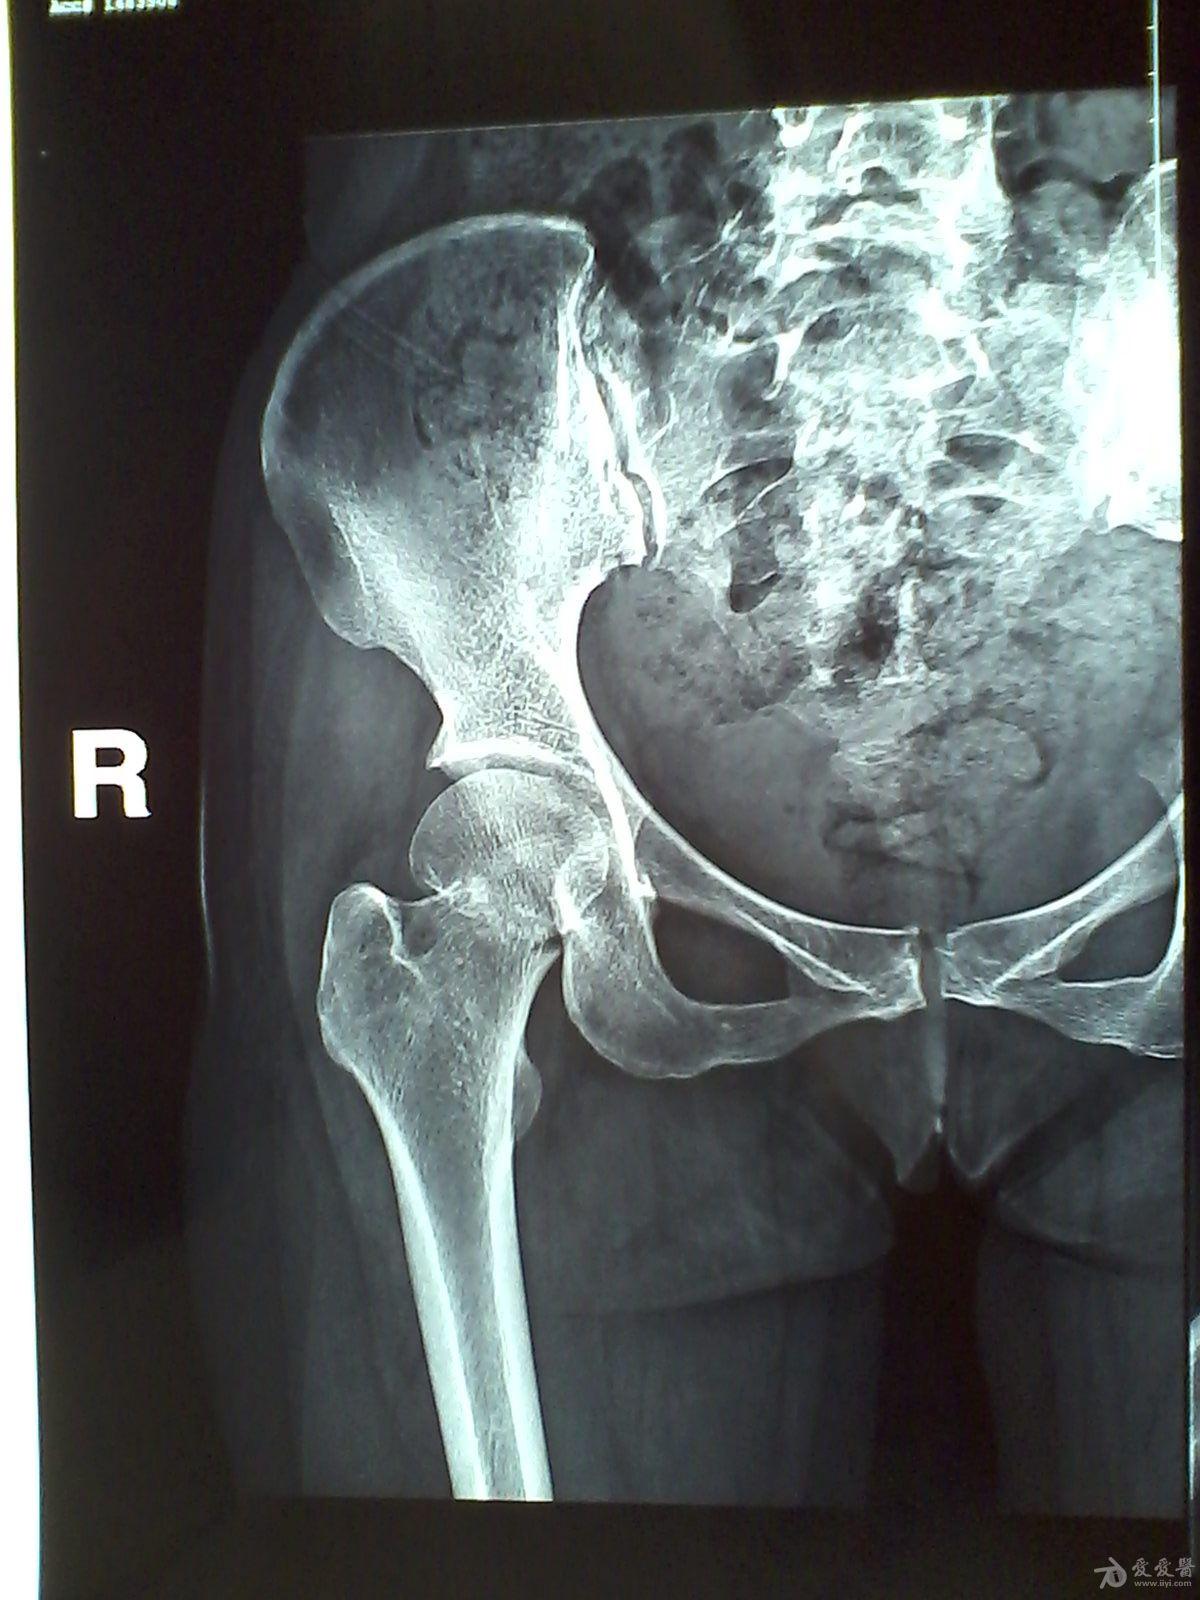 股骨颈骨折基底型图片